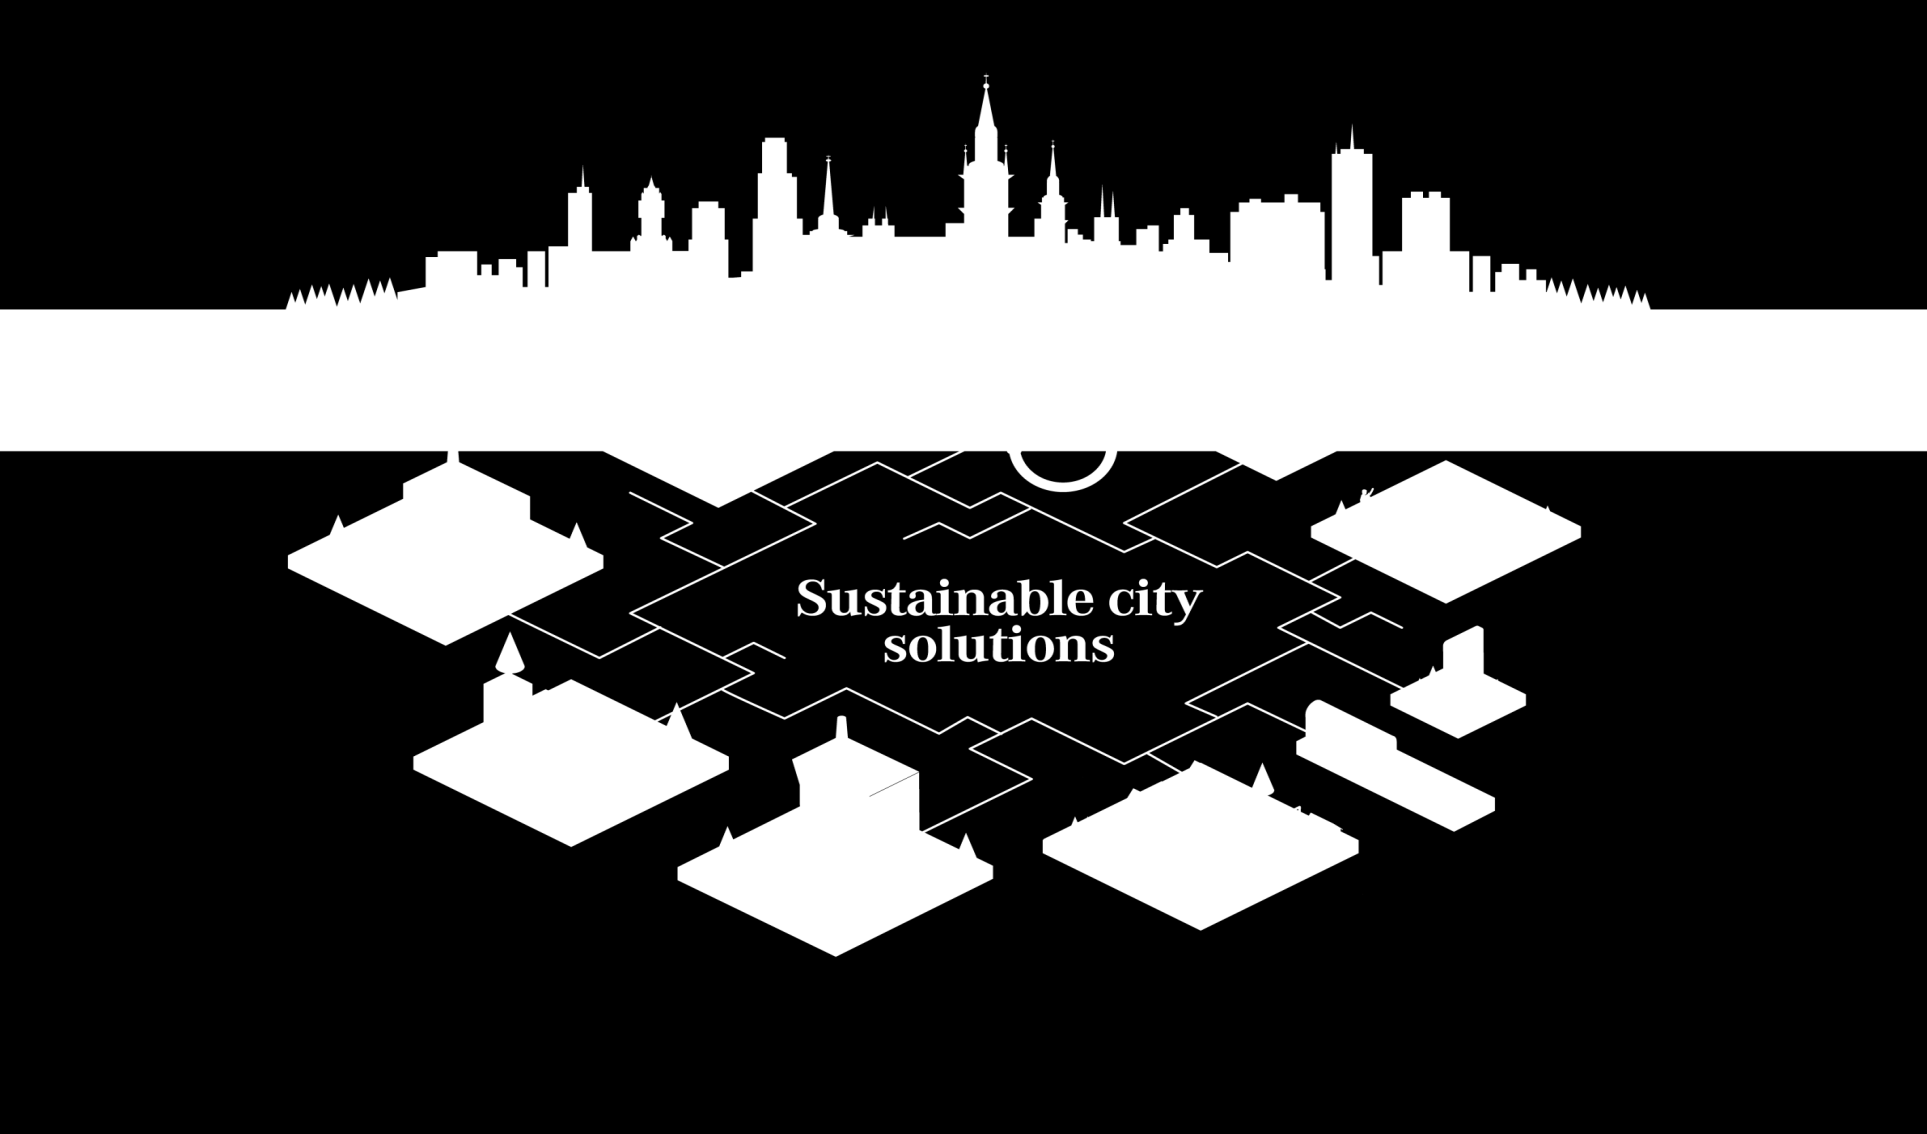 Fortumin kaupunkiratkaisut mahdollistavat kestävän ympäristön aktiivisille asukkaille Kierrätystalouden suunnannäyttäjä Edistykselliset lämmitys-, jäähdytys- ja sähköratkaisut Jäte- ja